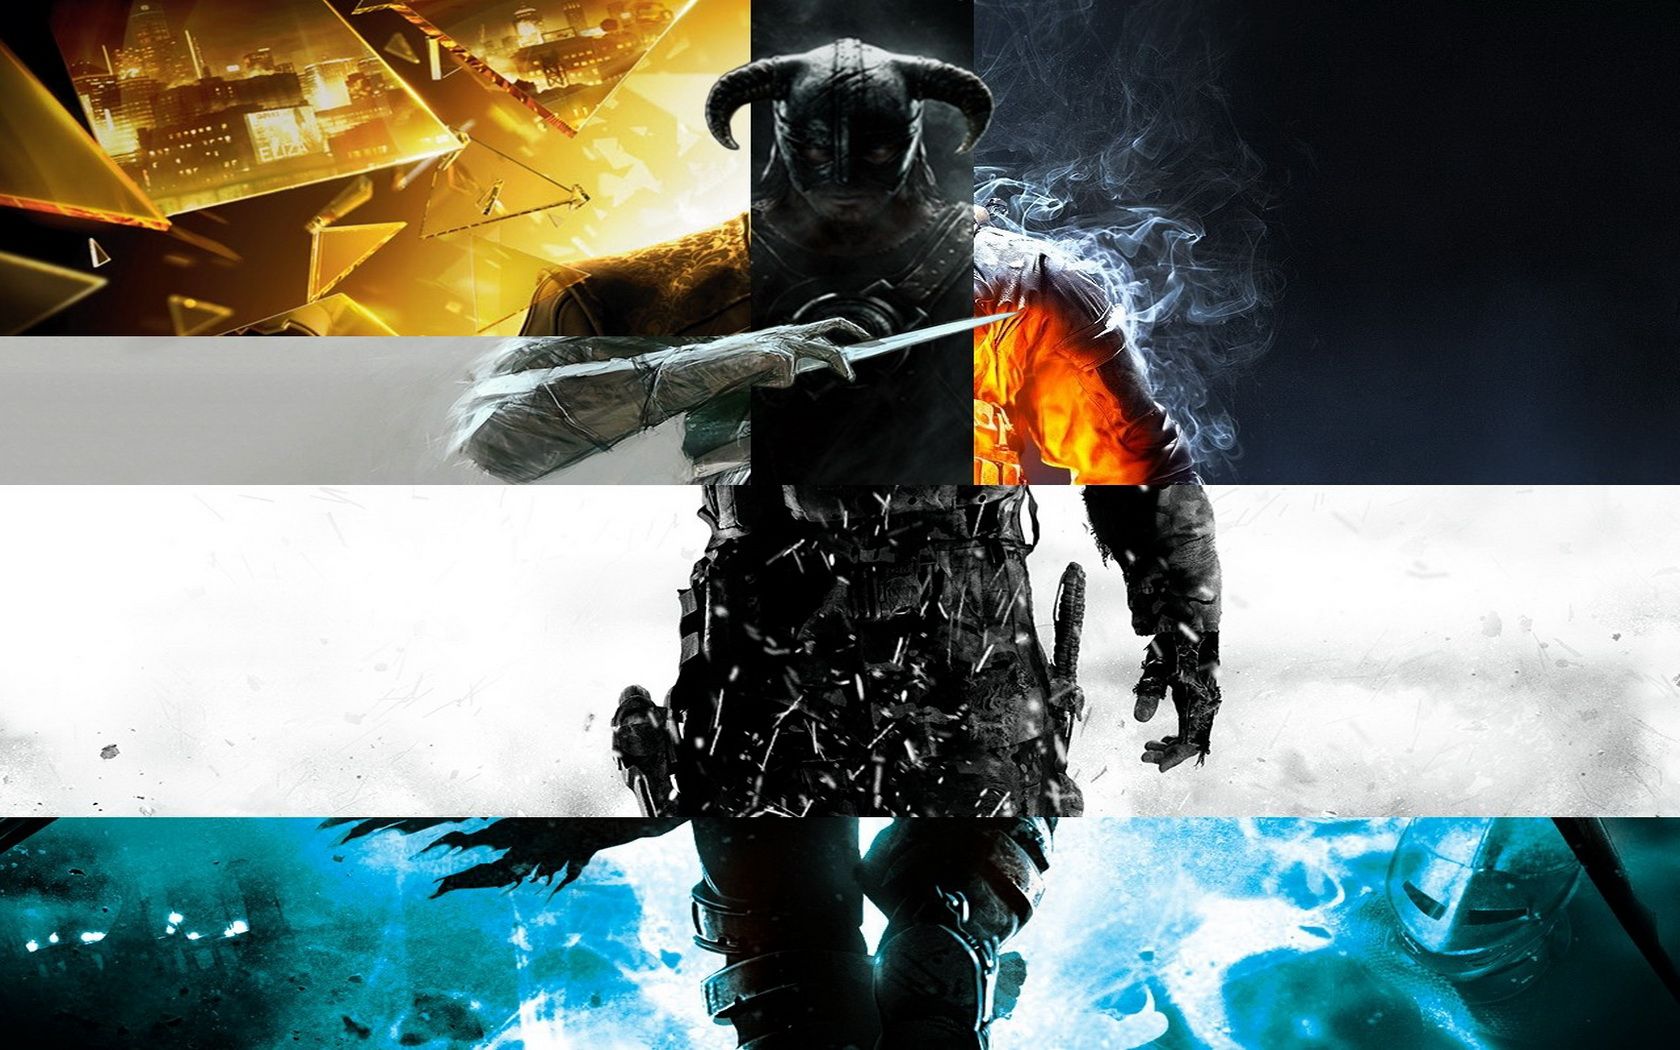 Mashup Background. Gaming Mashup Wallpaper, FPS Game Mashup Wallpaper and Mashup Wallpaper